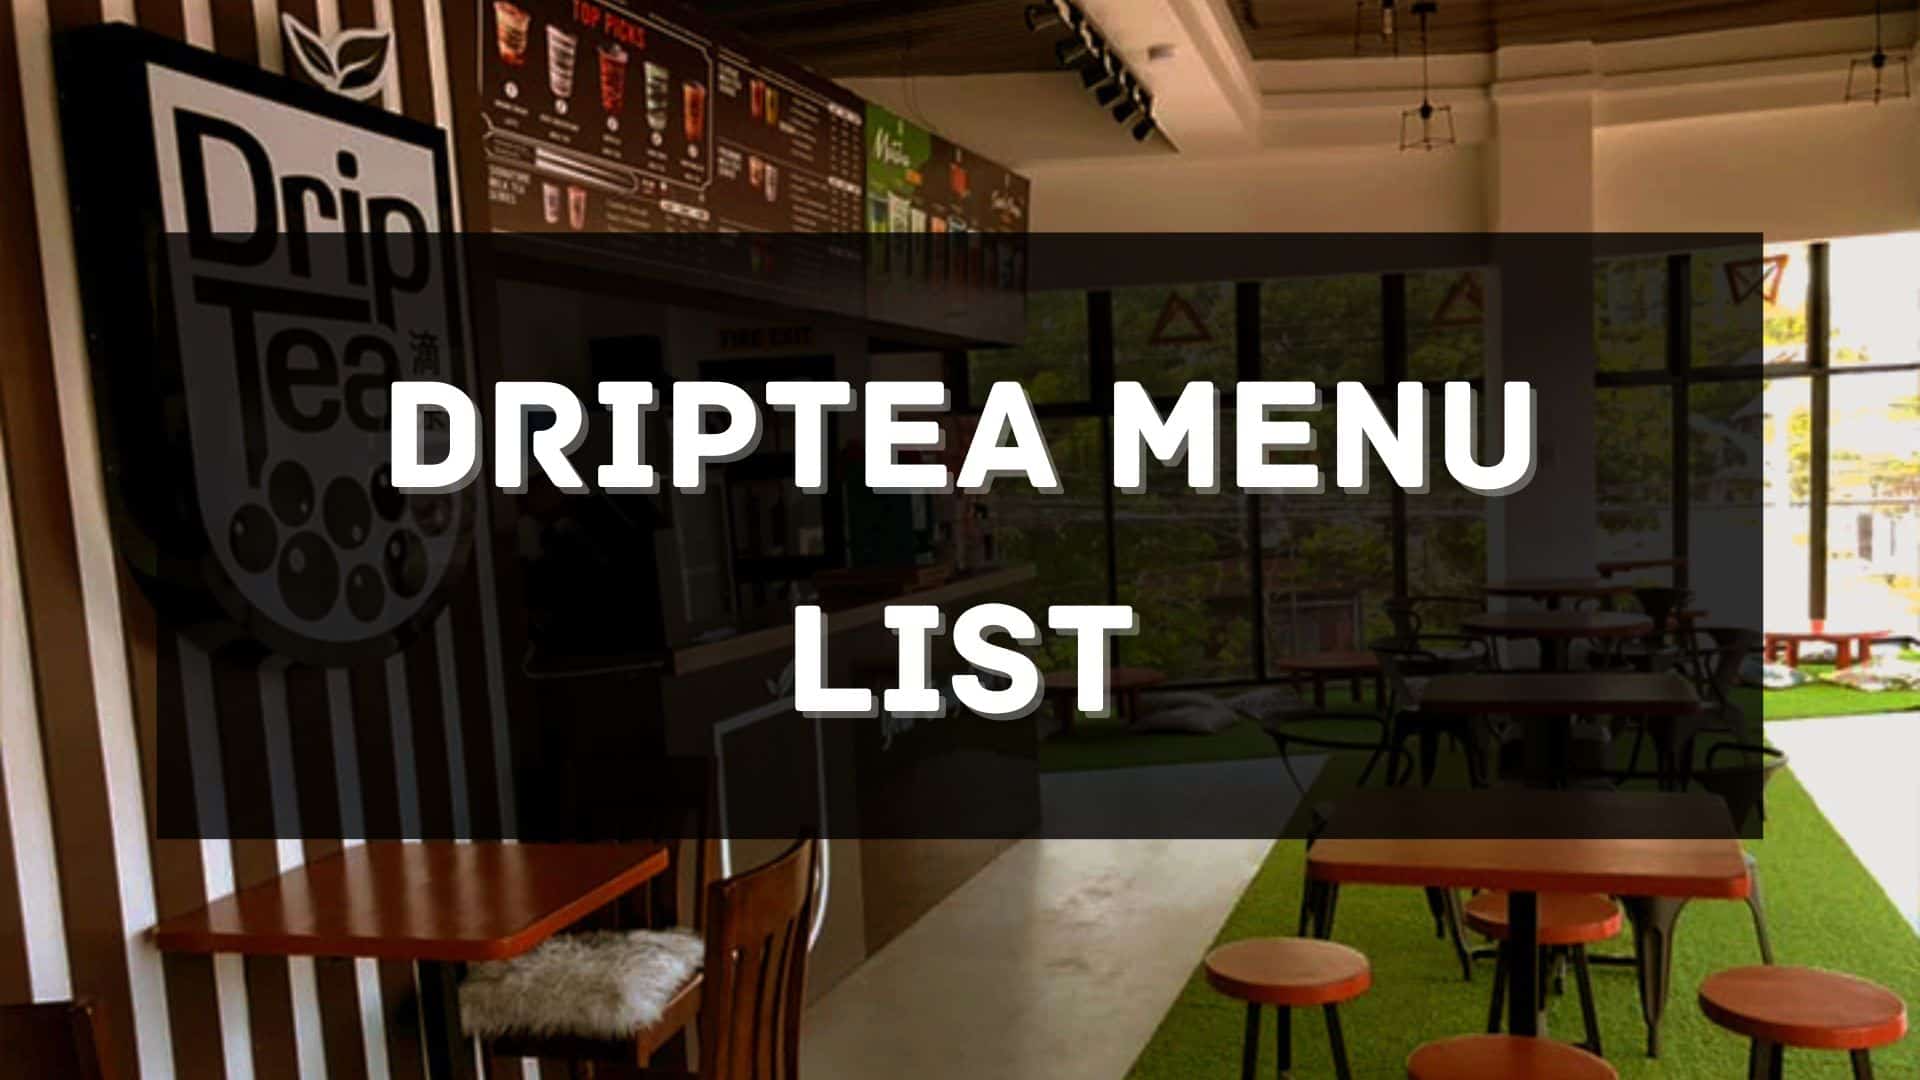 driptea menu prices philippines